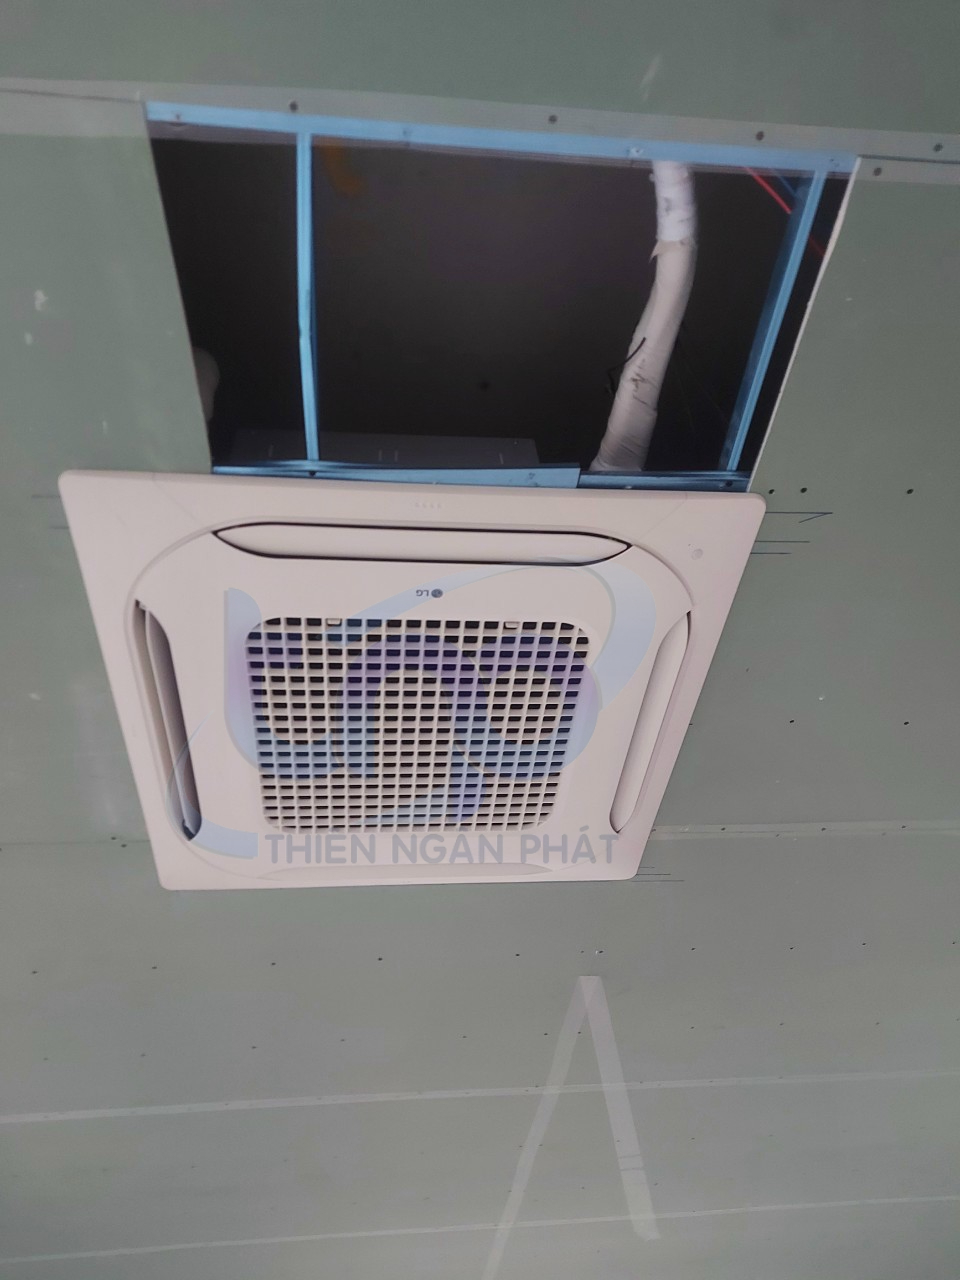   Lắp đặt máy lạnh âm trần LG mang đến sự thoải mái cho không gian sống   May-lanh-am-tran-4-huong-LG